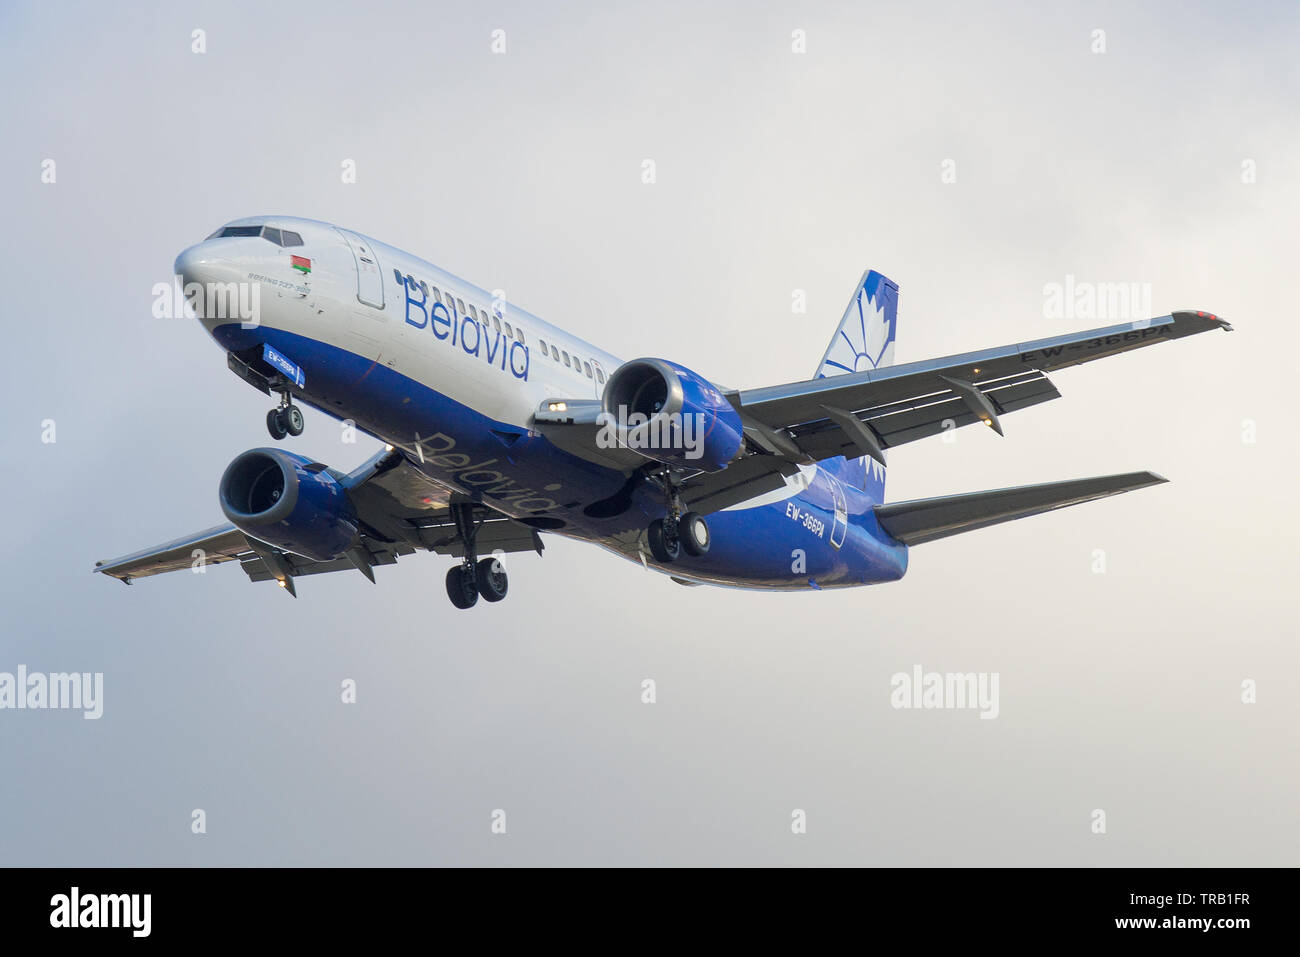 Russland, SANKT PETERSBURG - Oktober 25, 2018: Flugzeug Boeing 737-300 (EW-366-PA) von Belavia Airlines schließen in einem bewölkten Himmel Stockfoto